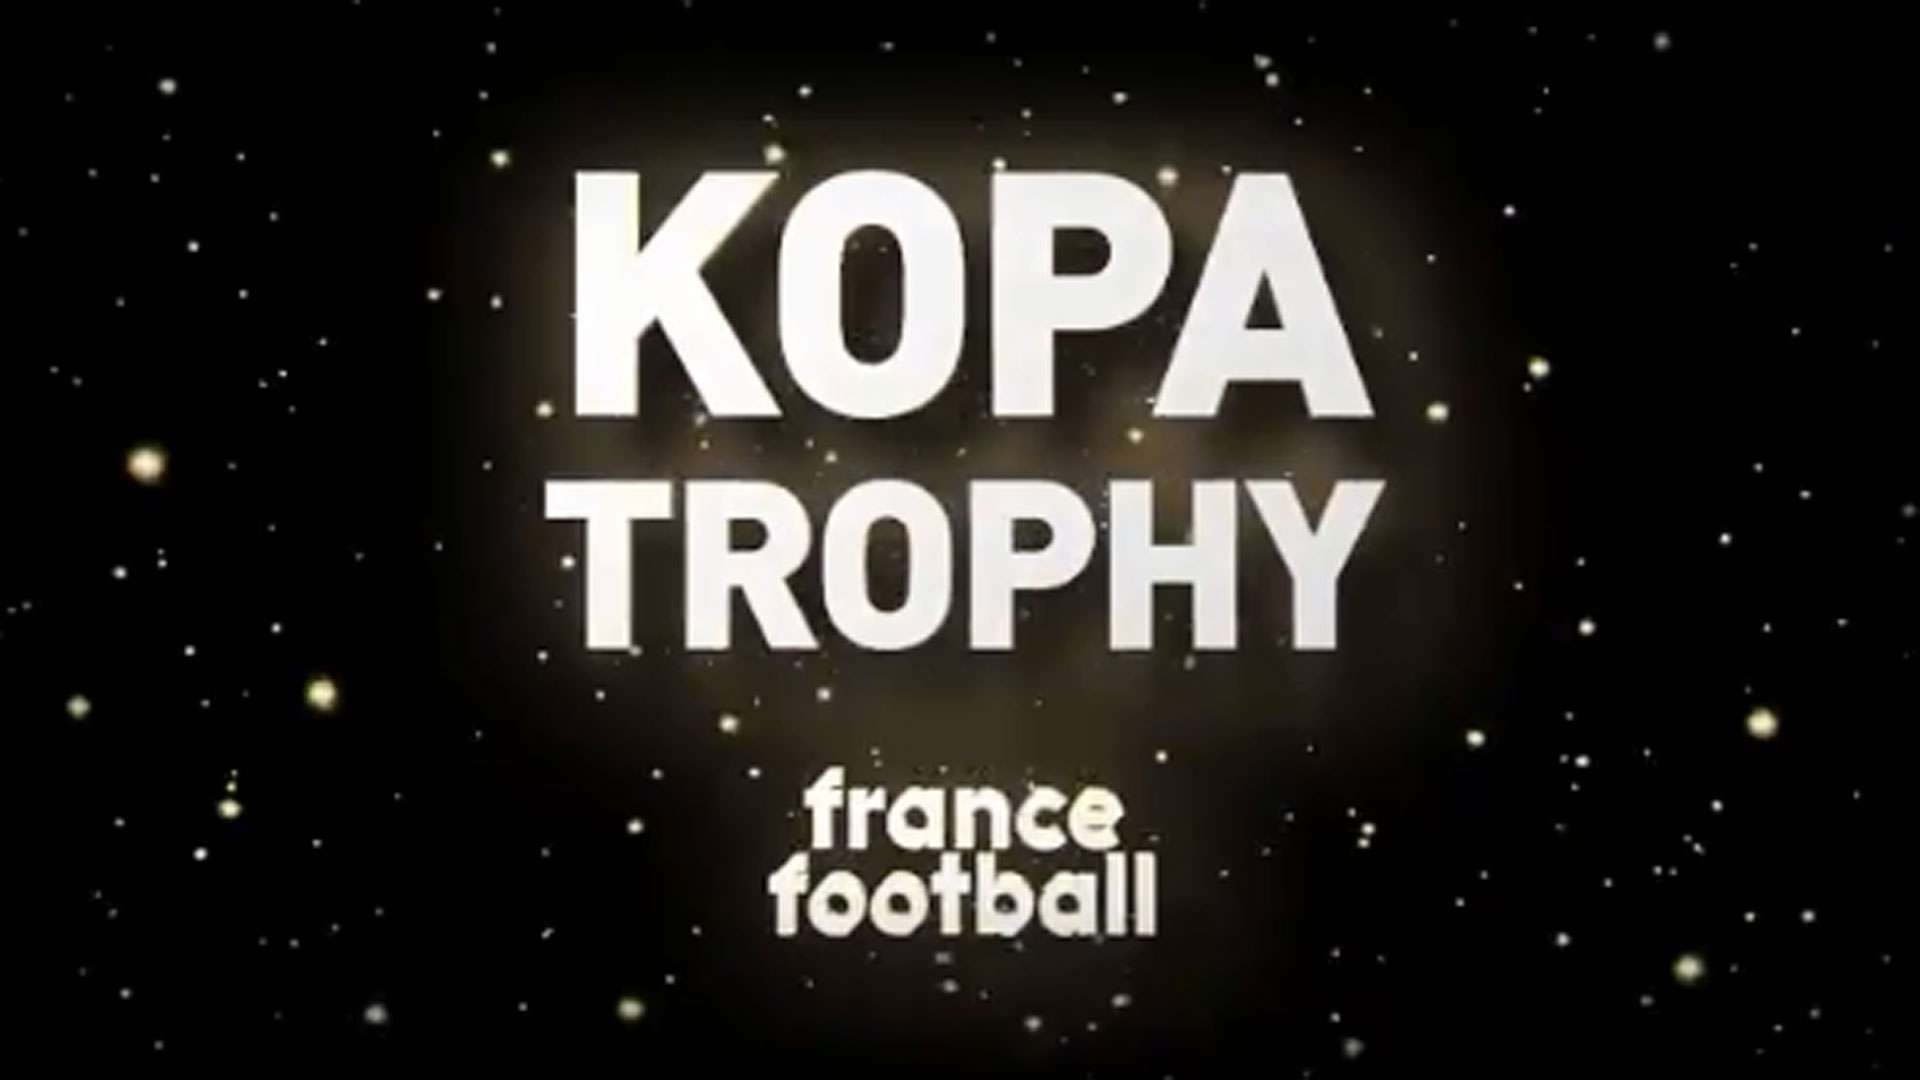 Kopa Trophy